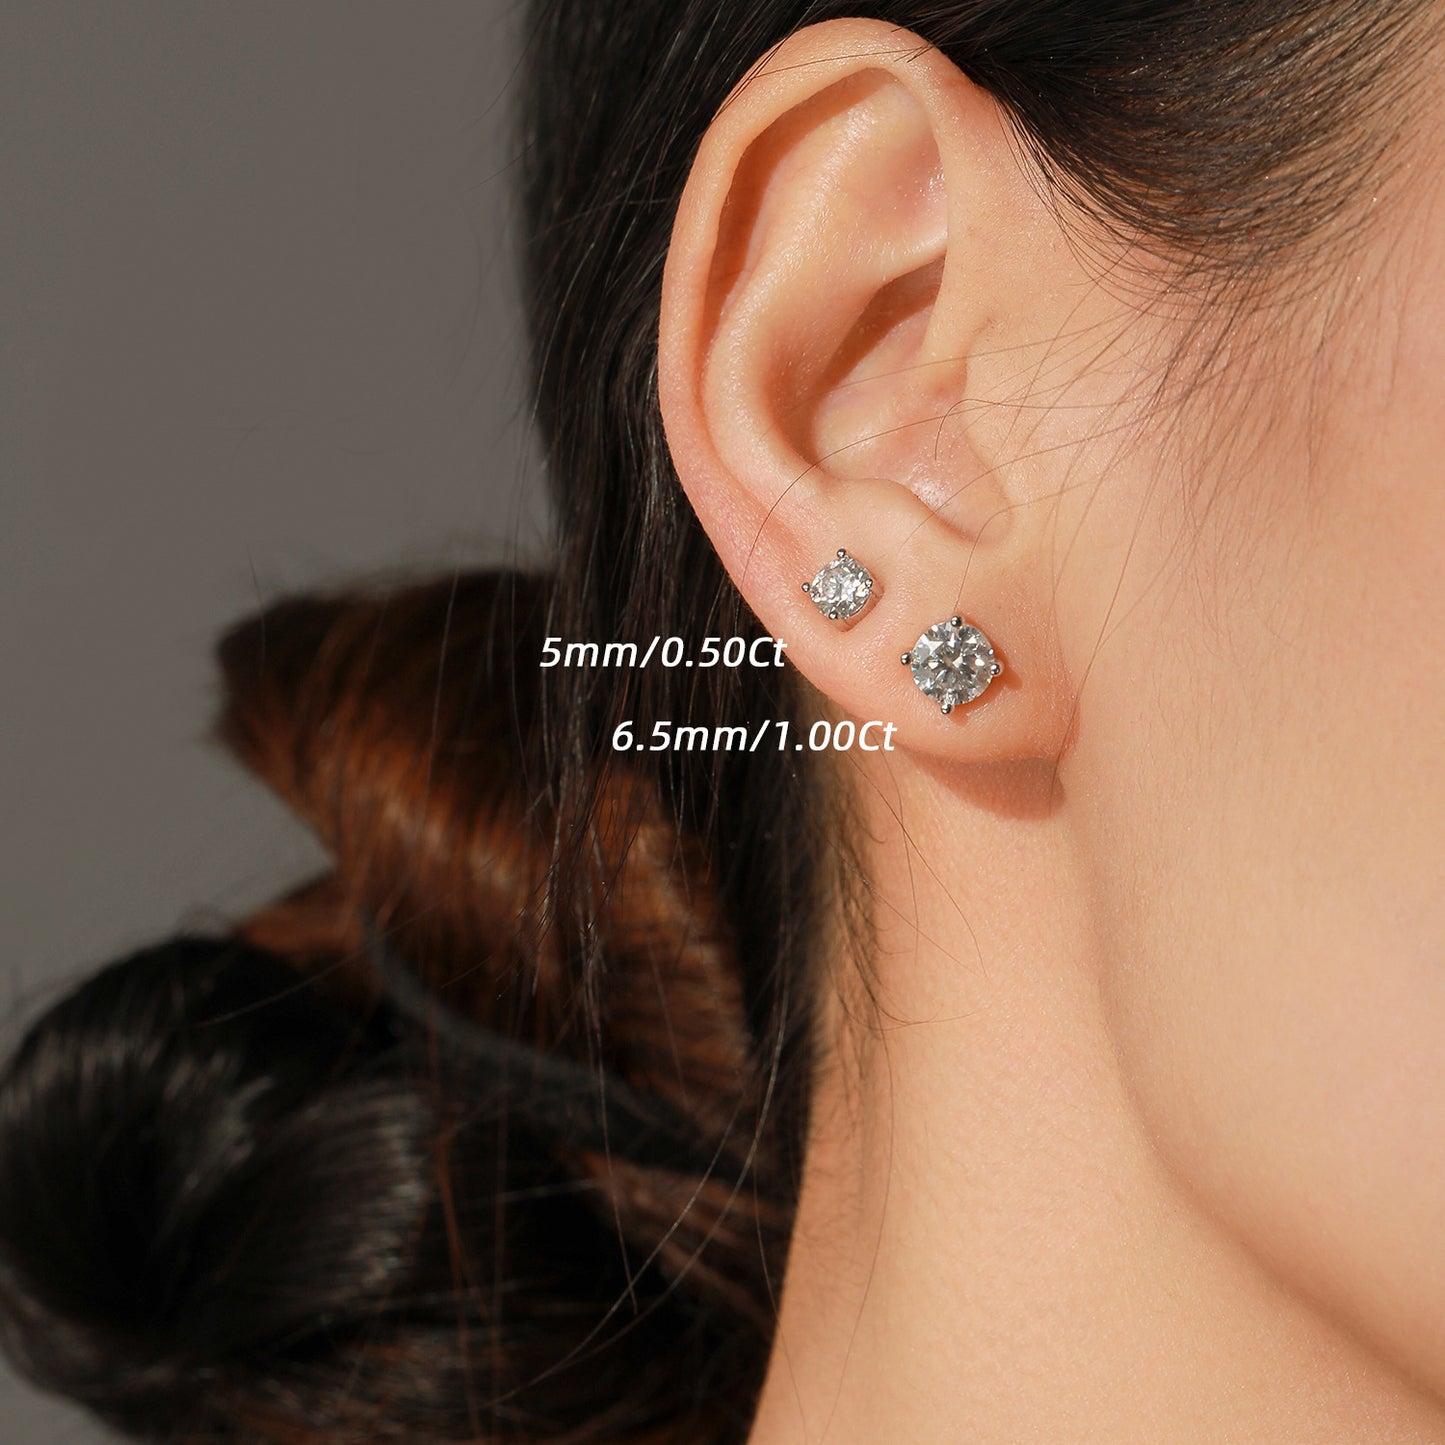 1 Carat Moissanite Sterling Silver French Elegant Wedding Earrings